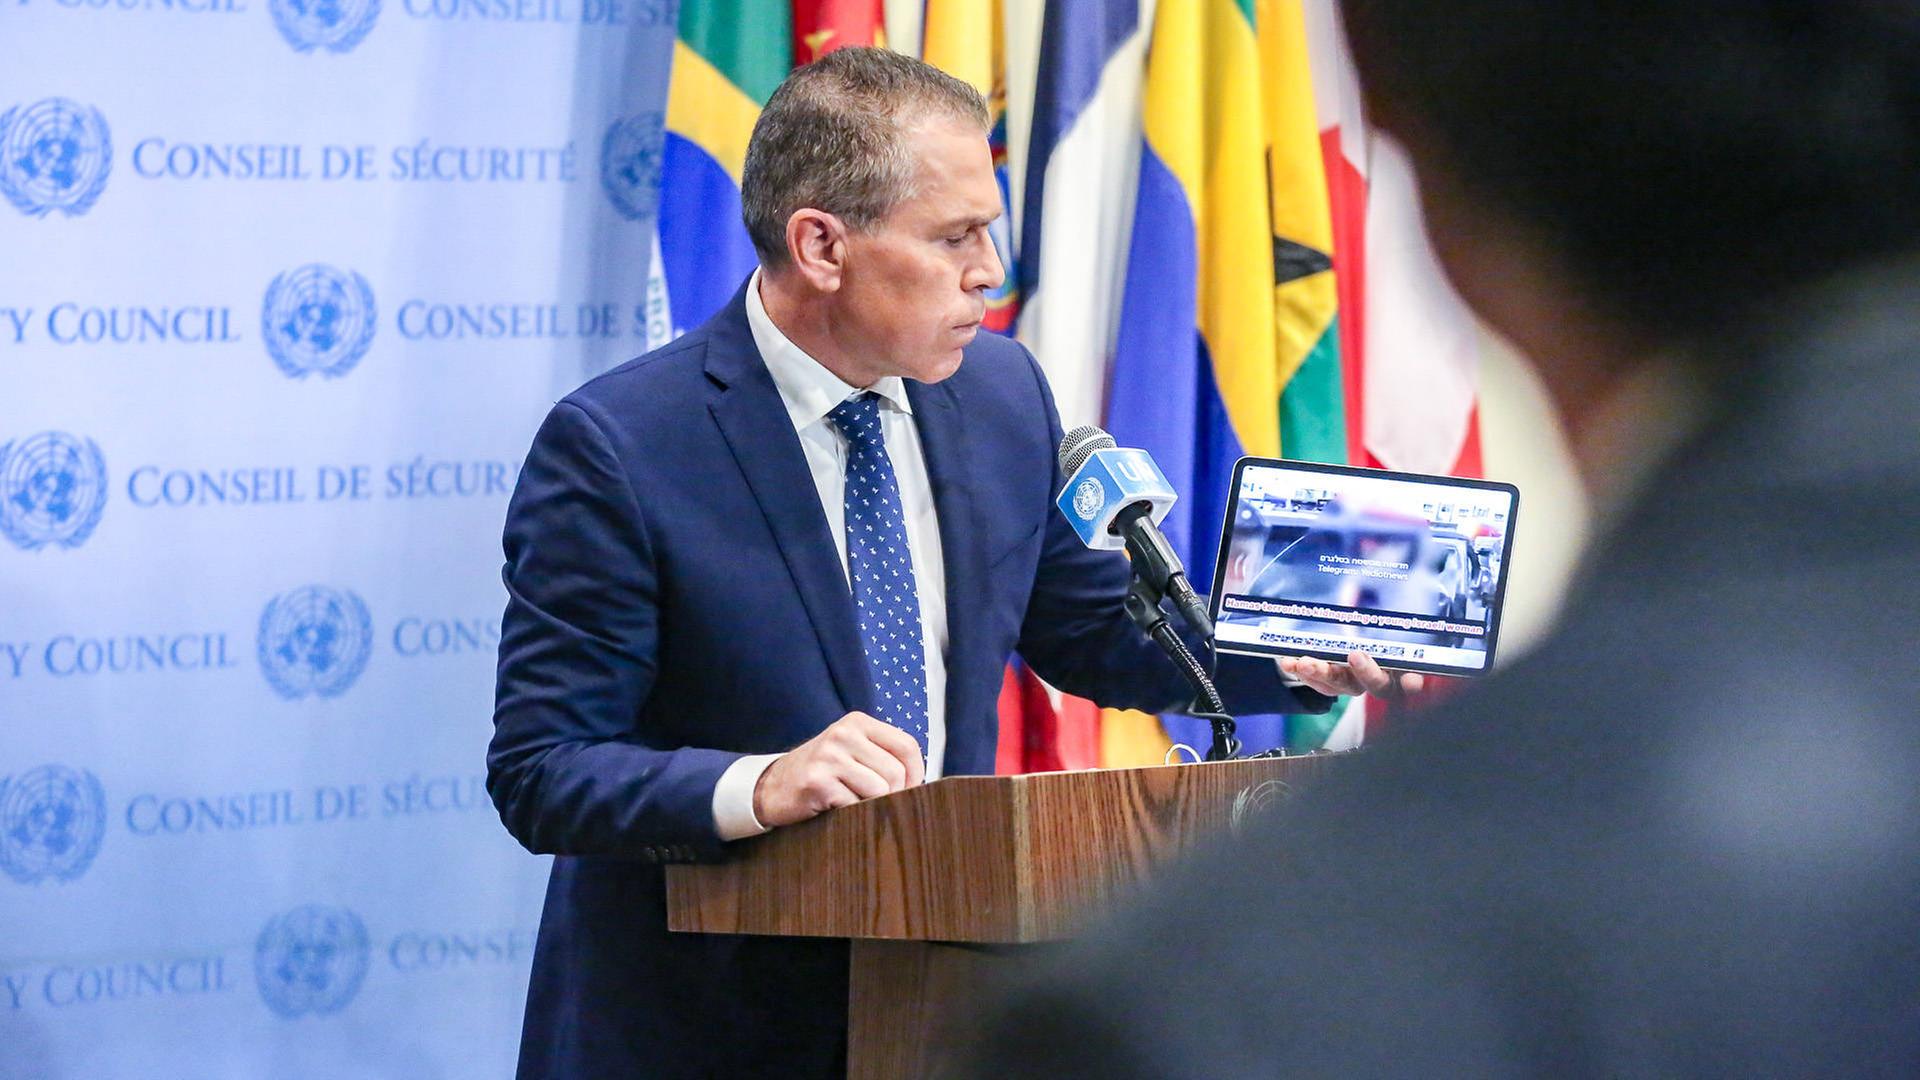 Erdan steht an einem Rednerpult und zeigt etwas auf einem Tablet. Dahinter eine hellblaue Wand mit Logos des UNO-Sicherheitsrates sowie mehrere Flaggen. 